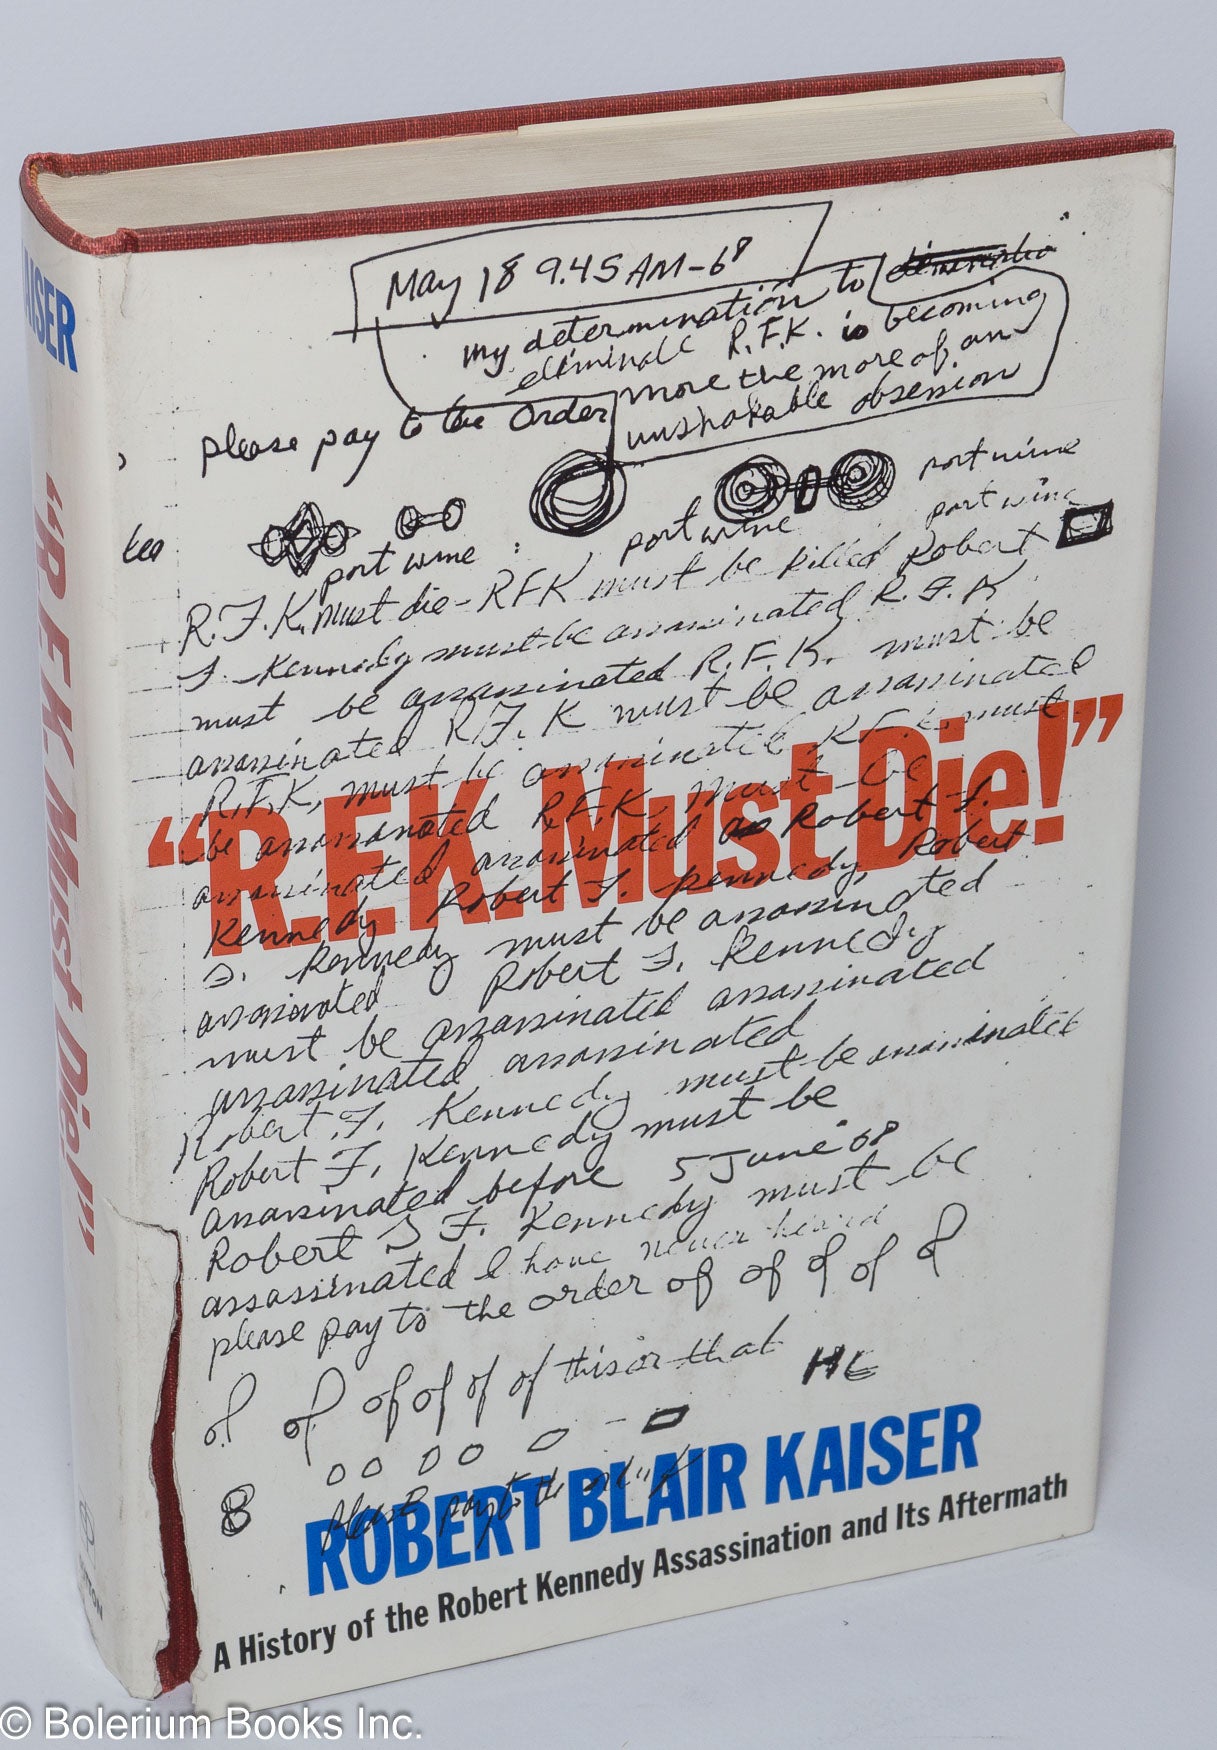 1217px x 1750px - R.F.K. must die! a history of the Robert Kennedy assassination and its  aftermath | Robert Blair Kaiser